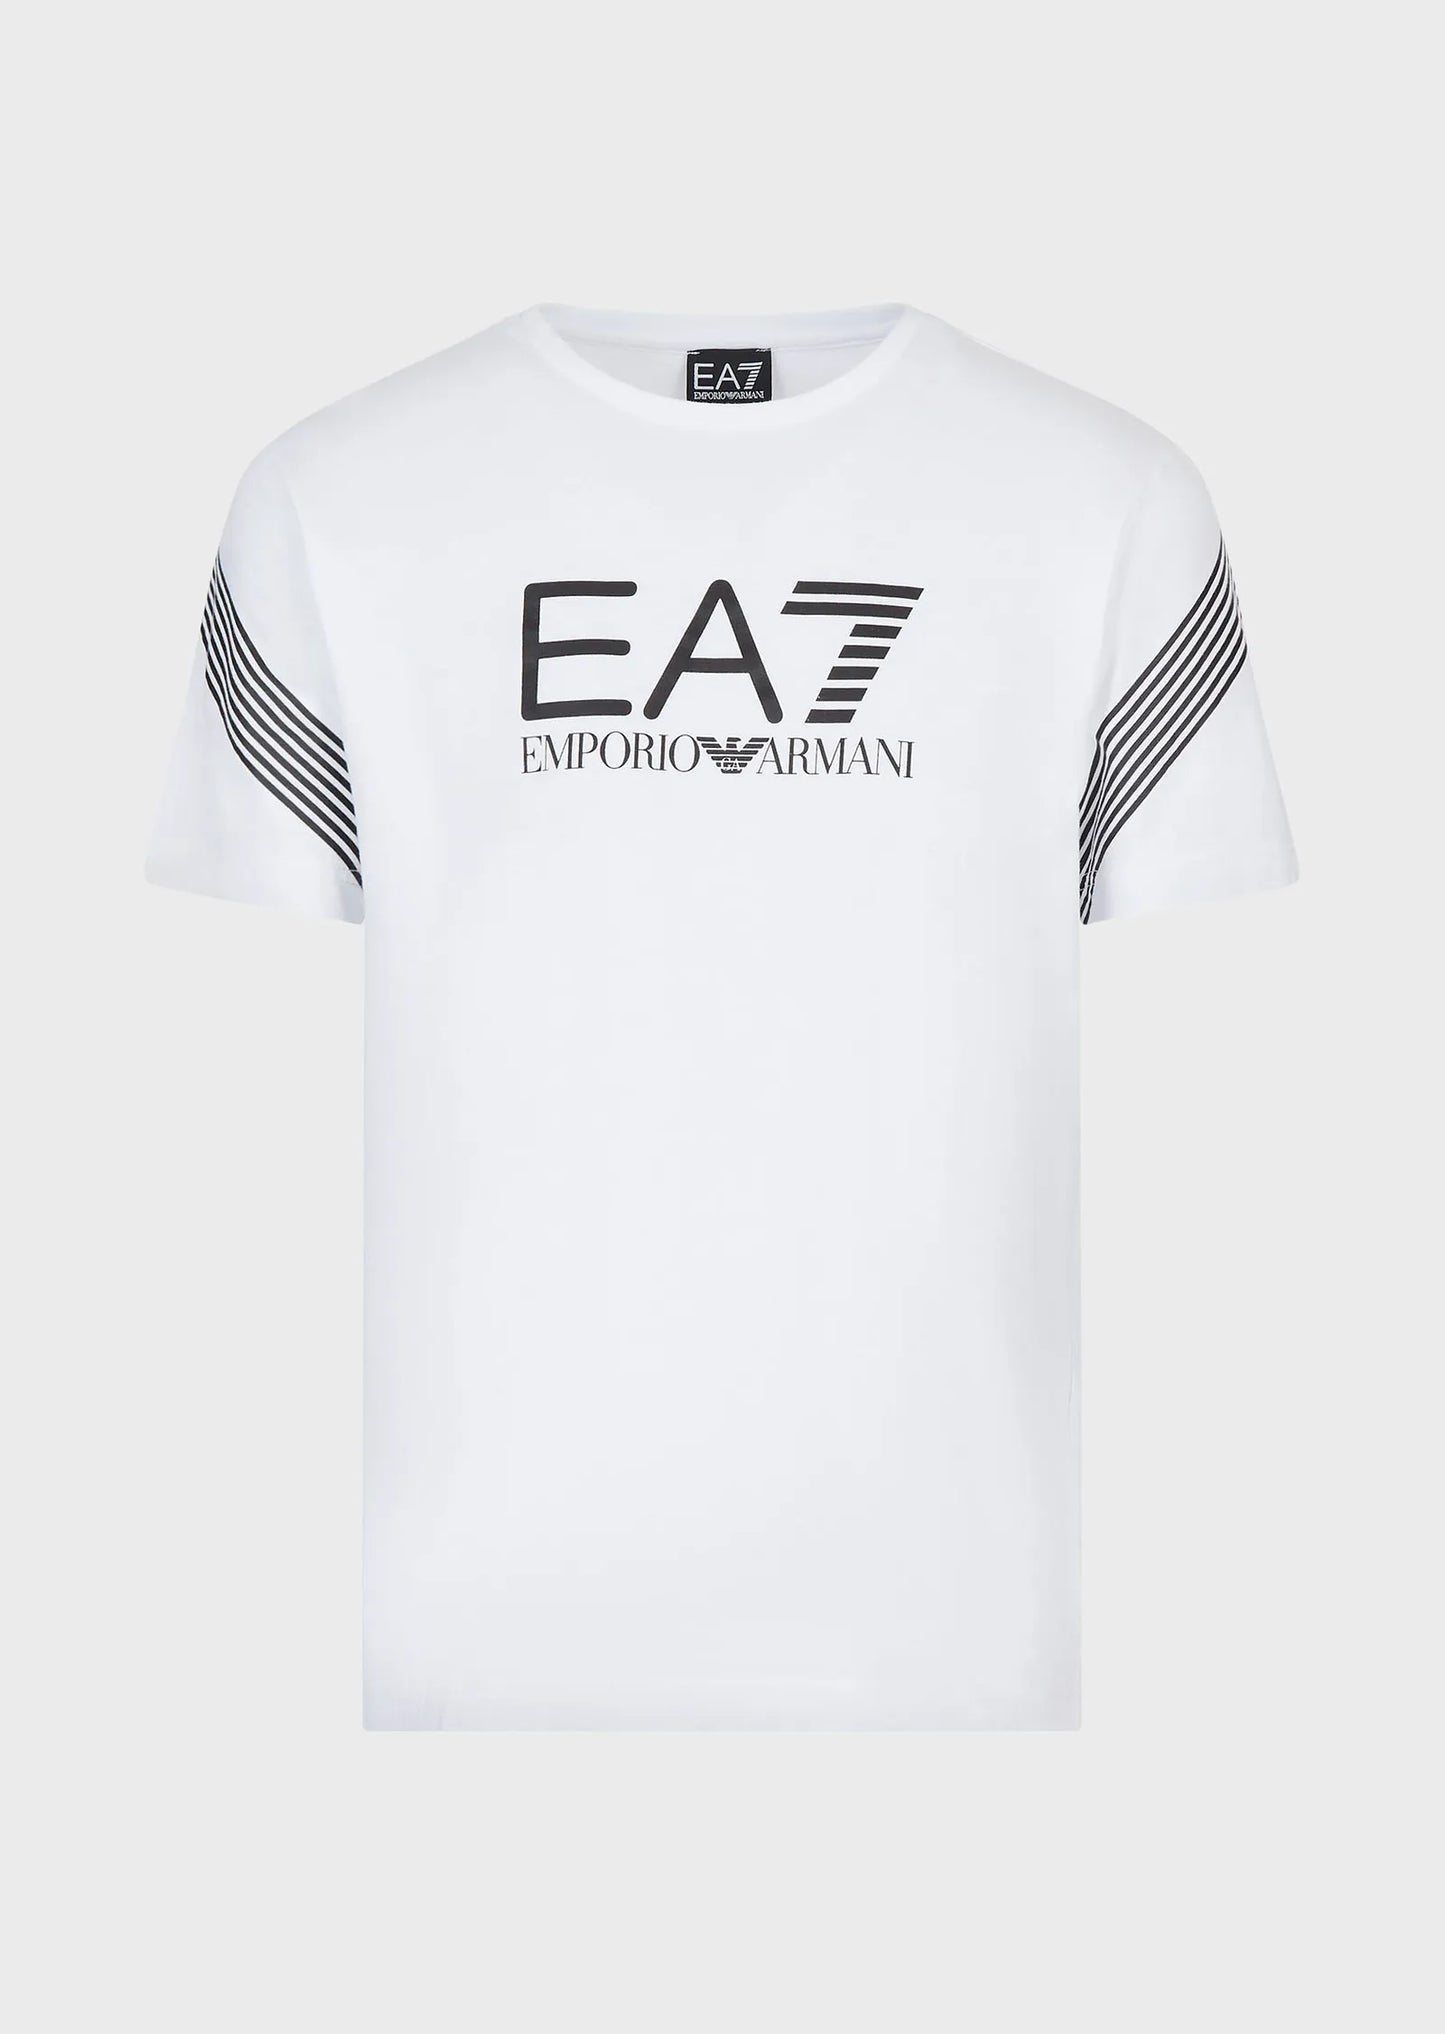 Camiseta EA7 - 6LPT03 PJ3BZ 1100